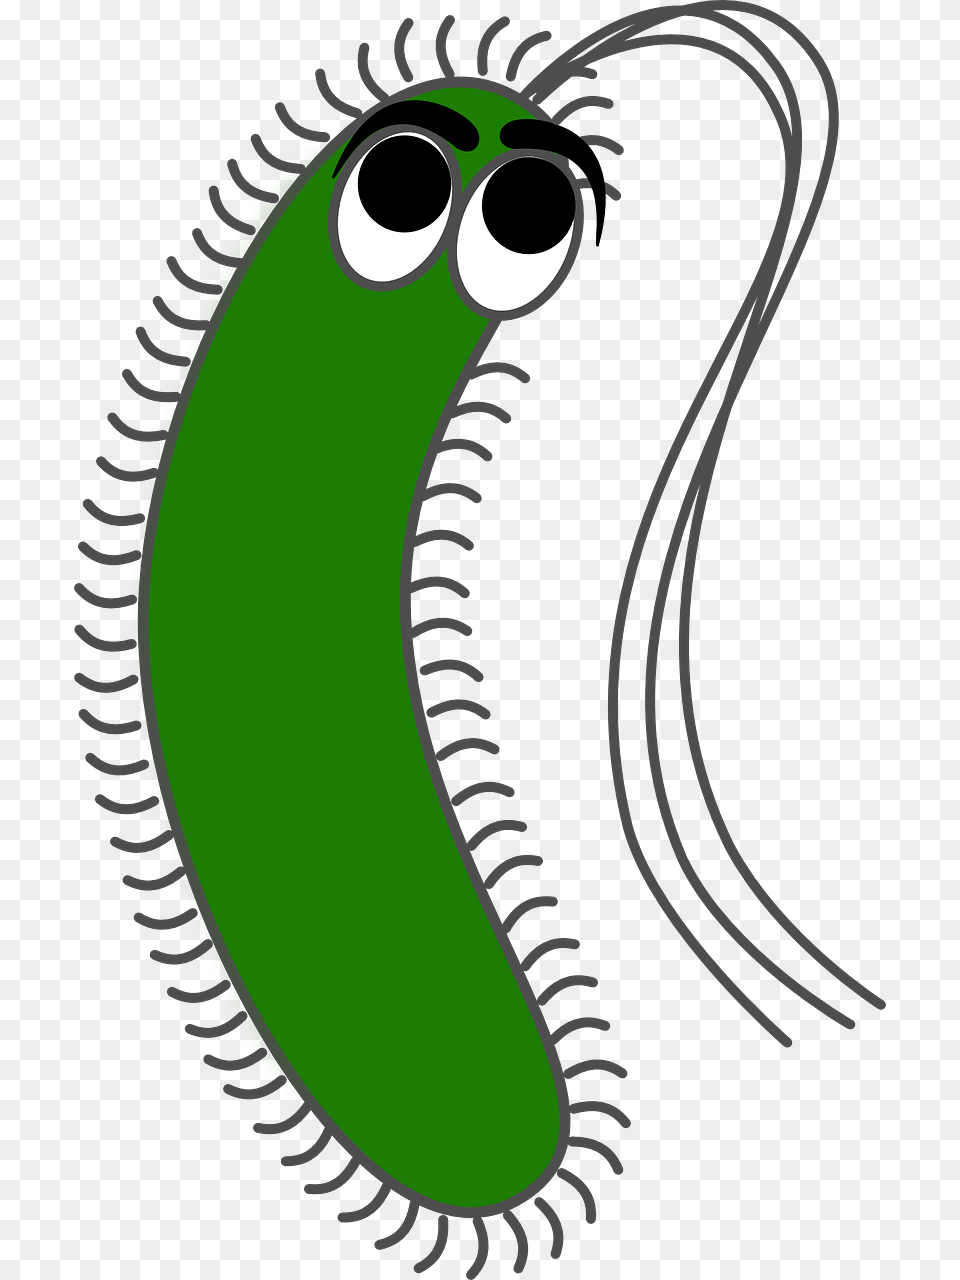 Bacteria Gram Negative Bacteria Cartoon, Animal, Reptile, Snake, Cucumber Png